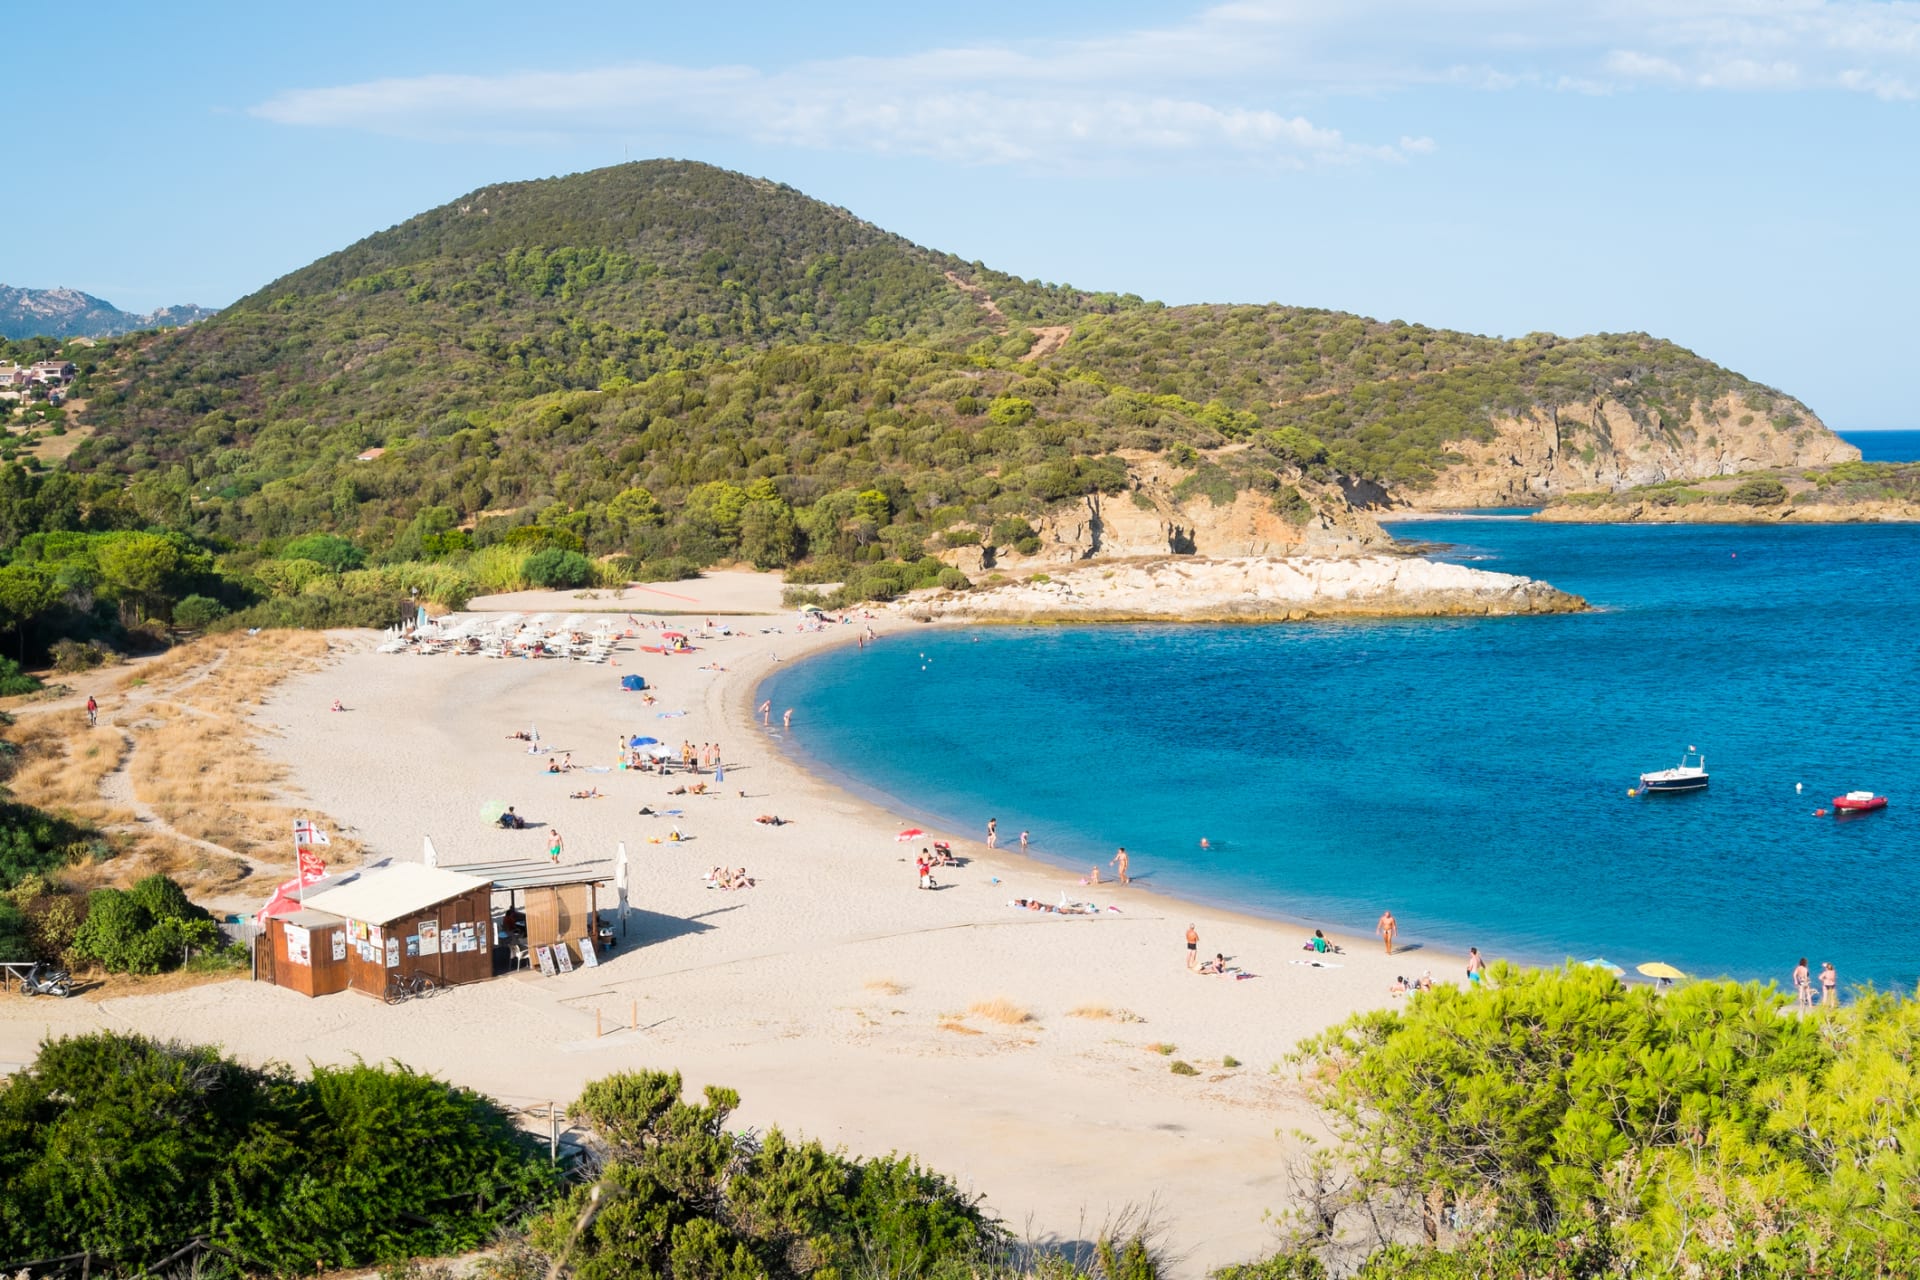 Pláž u vesničky Chia na ostrově Sardinie